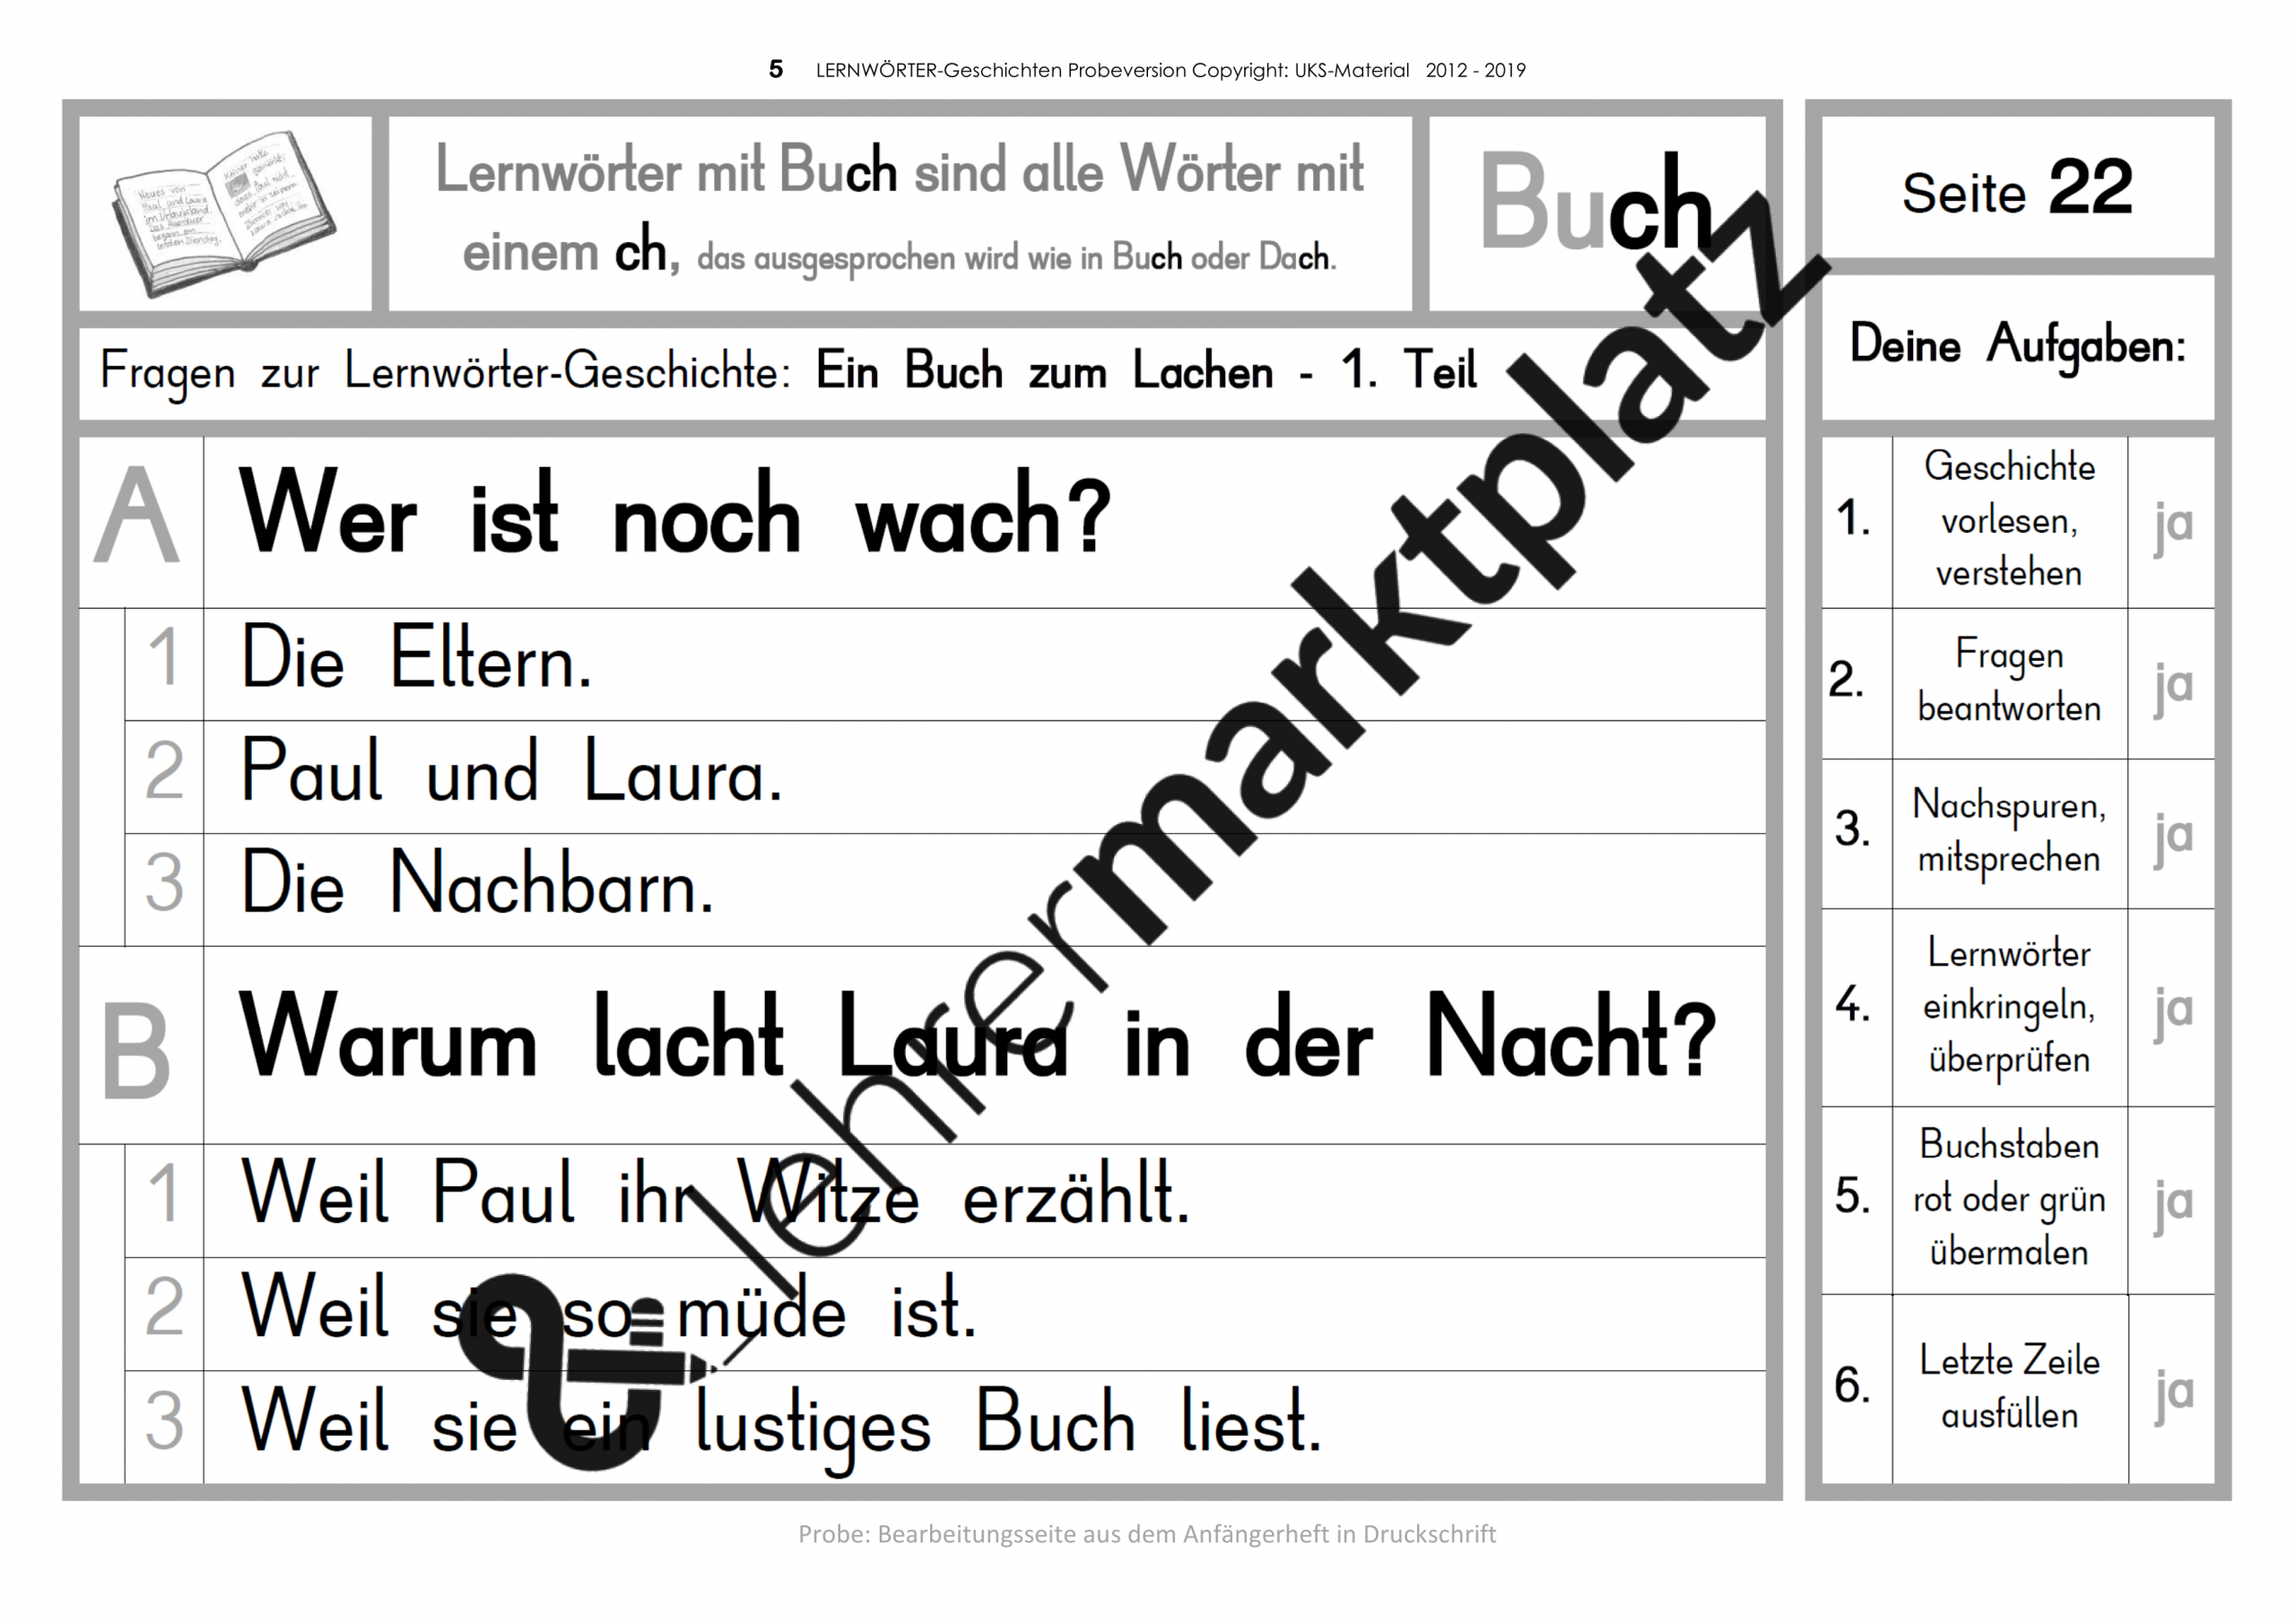 Materialserie Lernwörter-Geschichten Zum Kennenlernen In bestimmt für Druckbuchstabe Rätsel